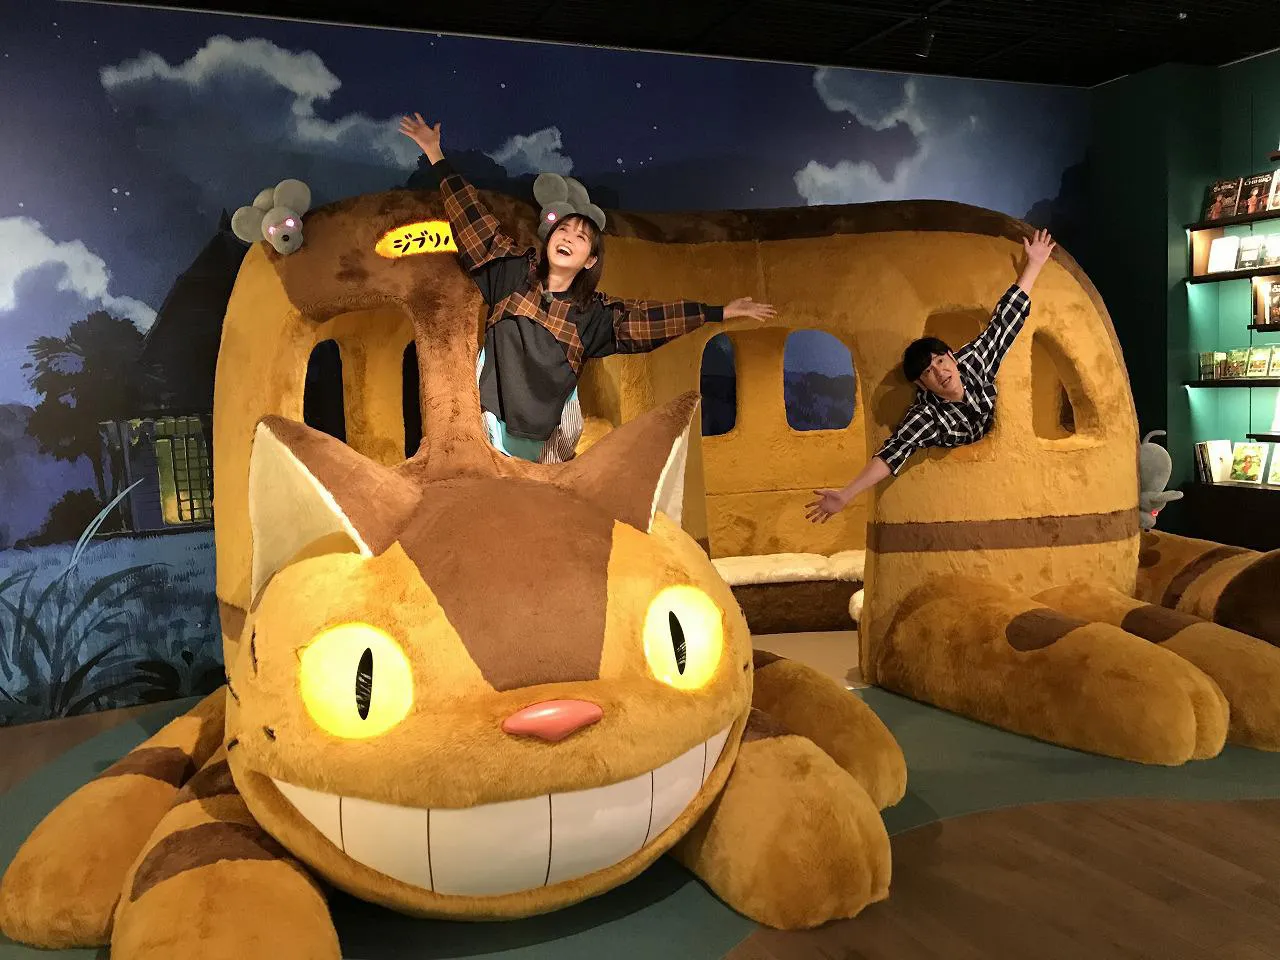 「となりのトトロ」の“ネコバス”に乗りポーズをとる佐々木希、田中直樹